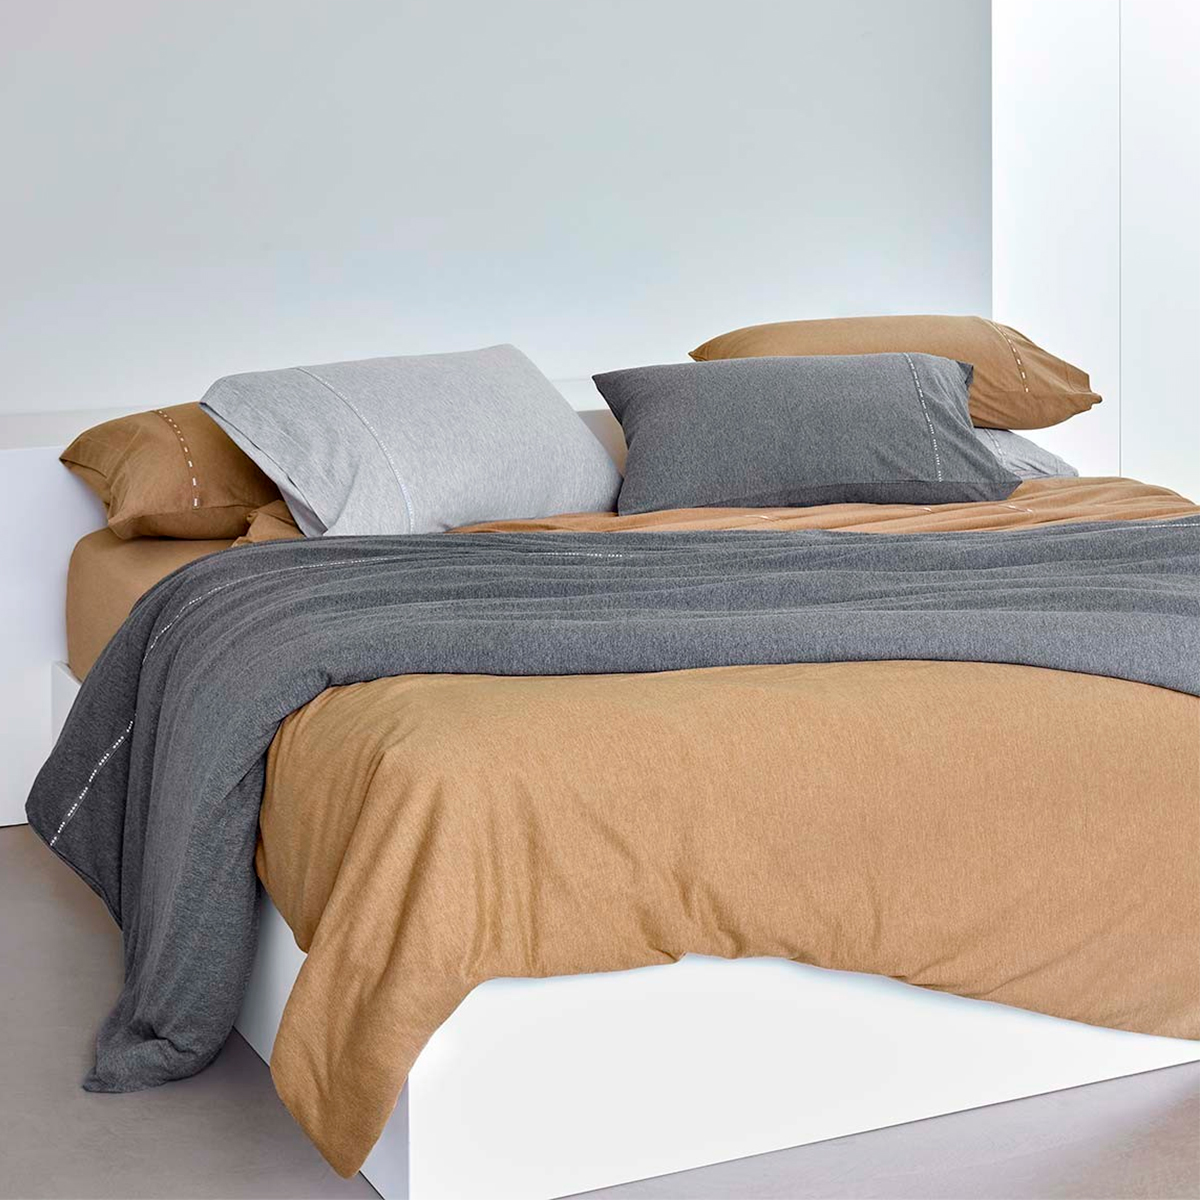 Parure de lit BOSS Home ICONIC STRIPE Beige en 90 fils - Bed Linen  Collections haut de gamme